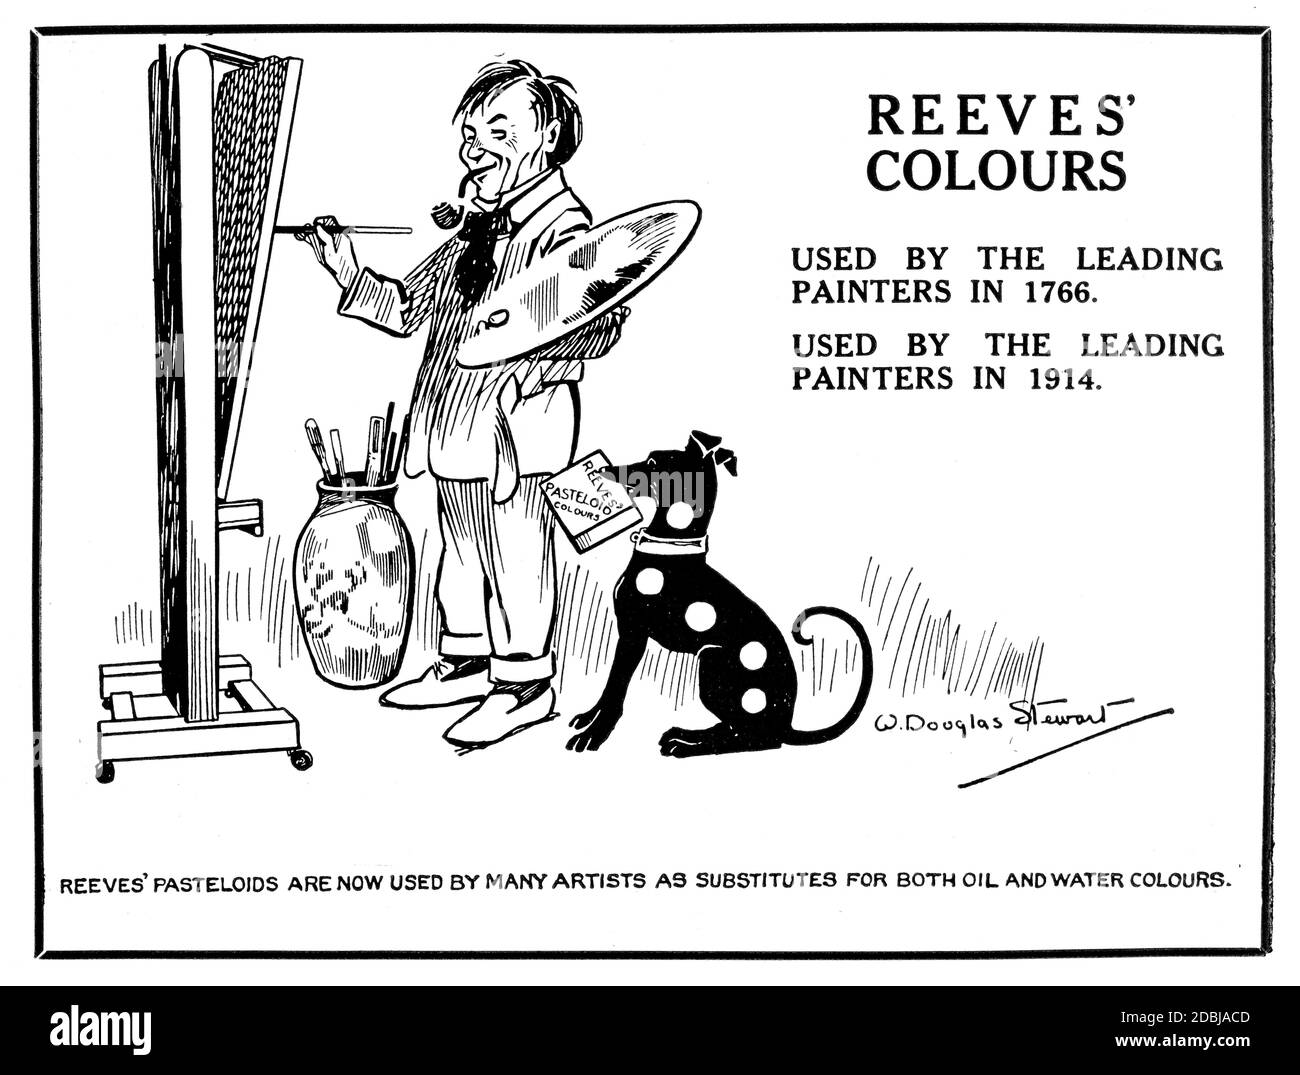 1914 Reeves Künstlermaterialwerbung mit Karikatur von Artist AT Staffelei  aus dem Studio ein Illustriertes Magazin der feinen und Angewandte Kunst  Stockfotografie - Alamy